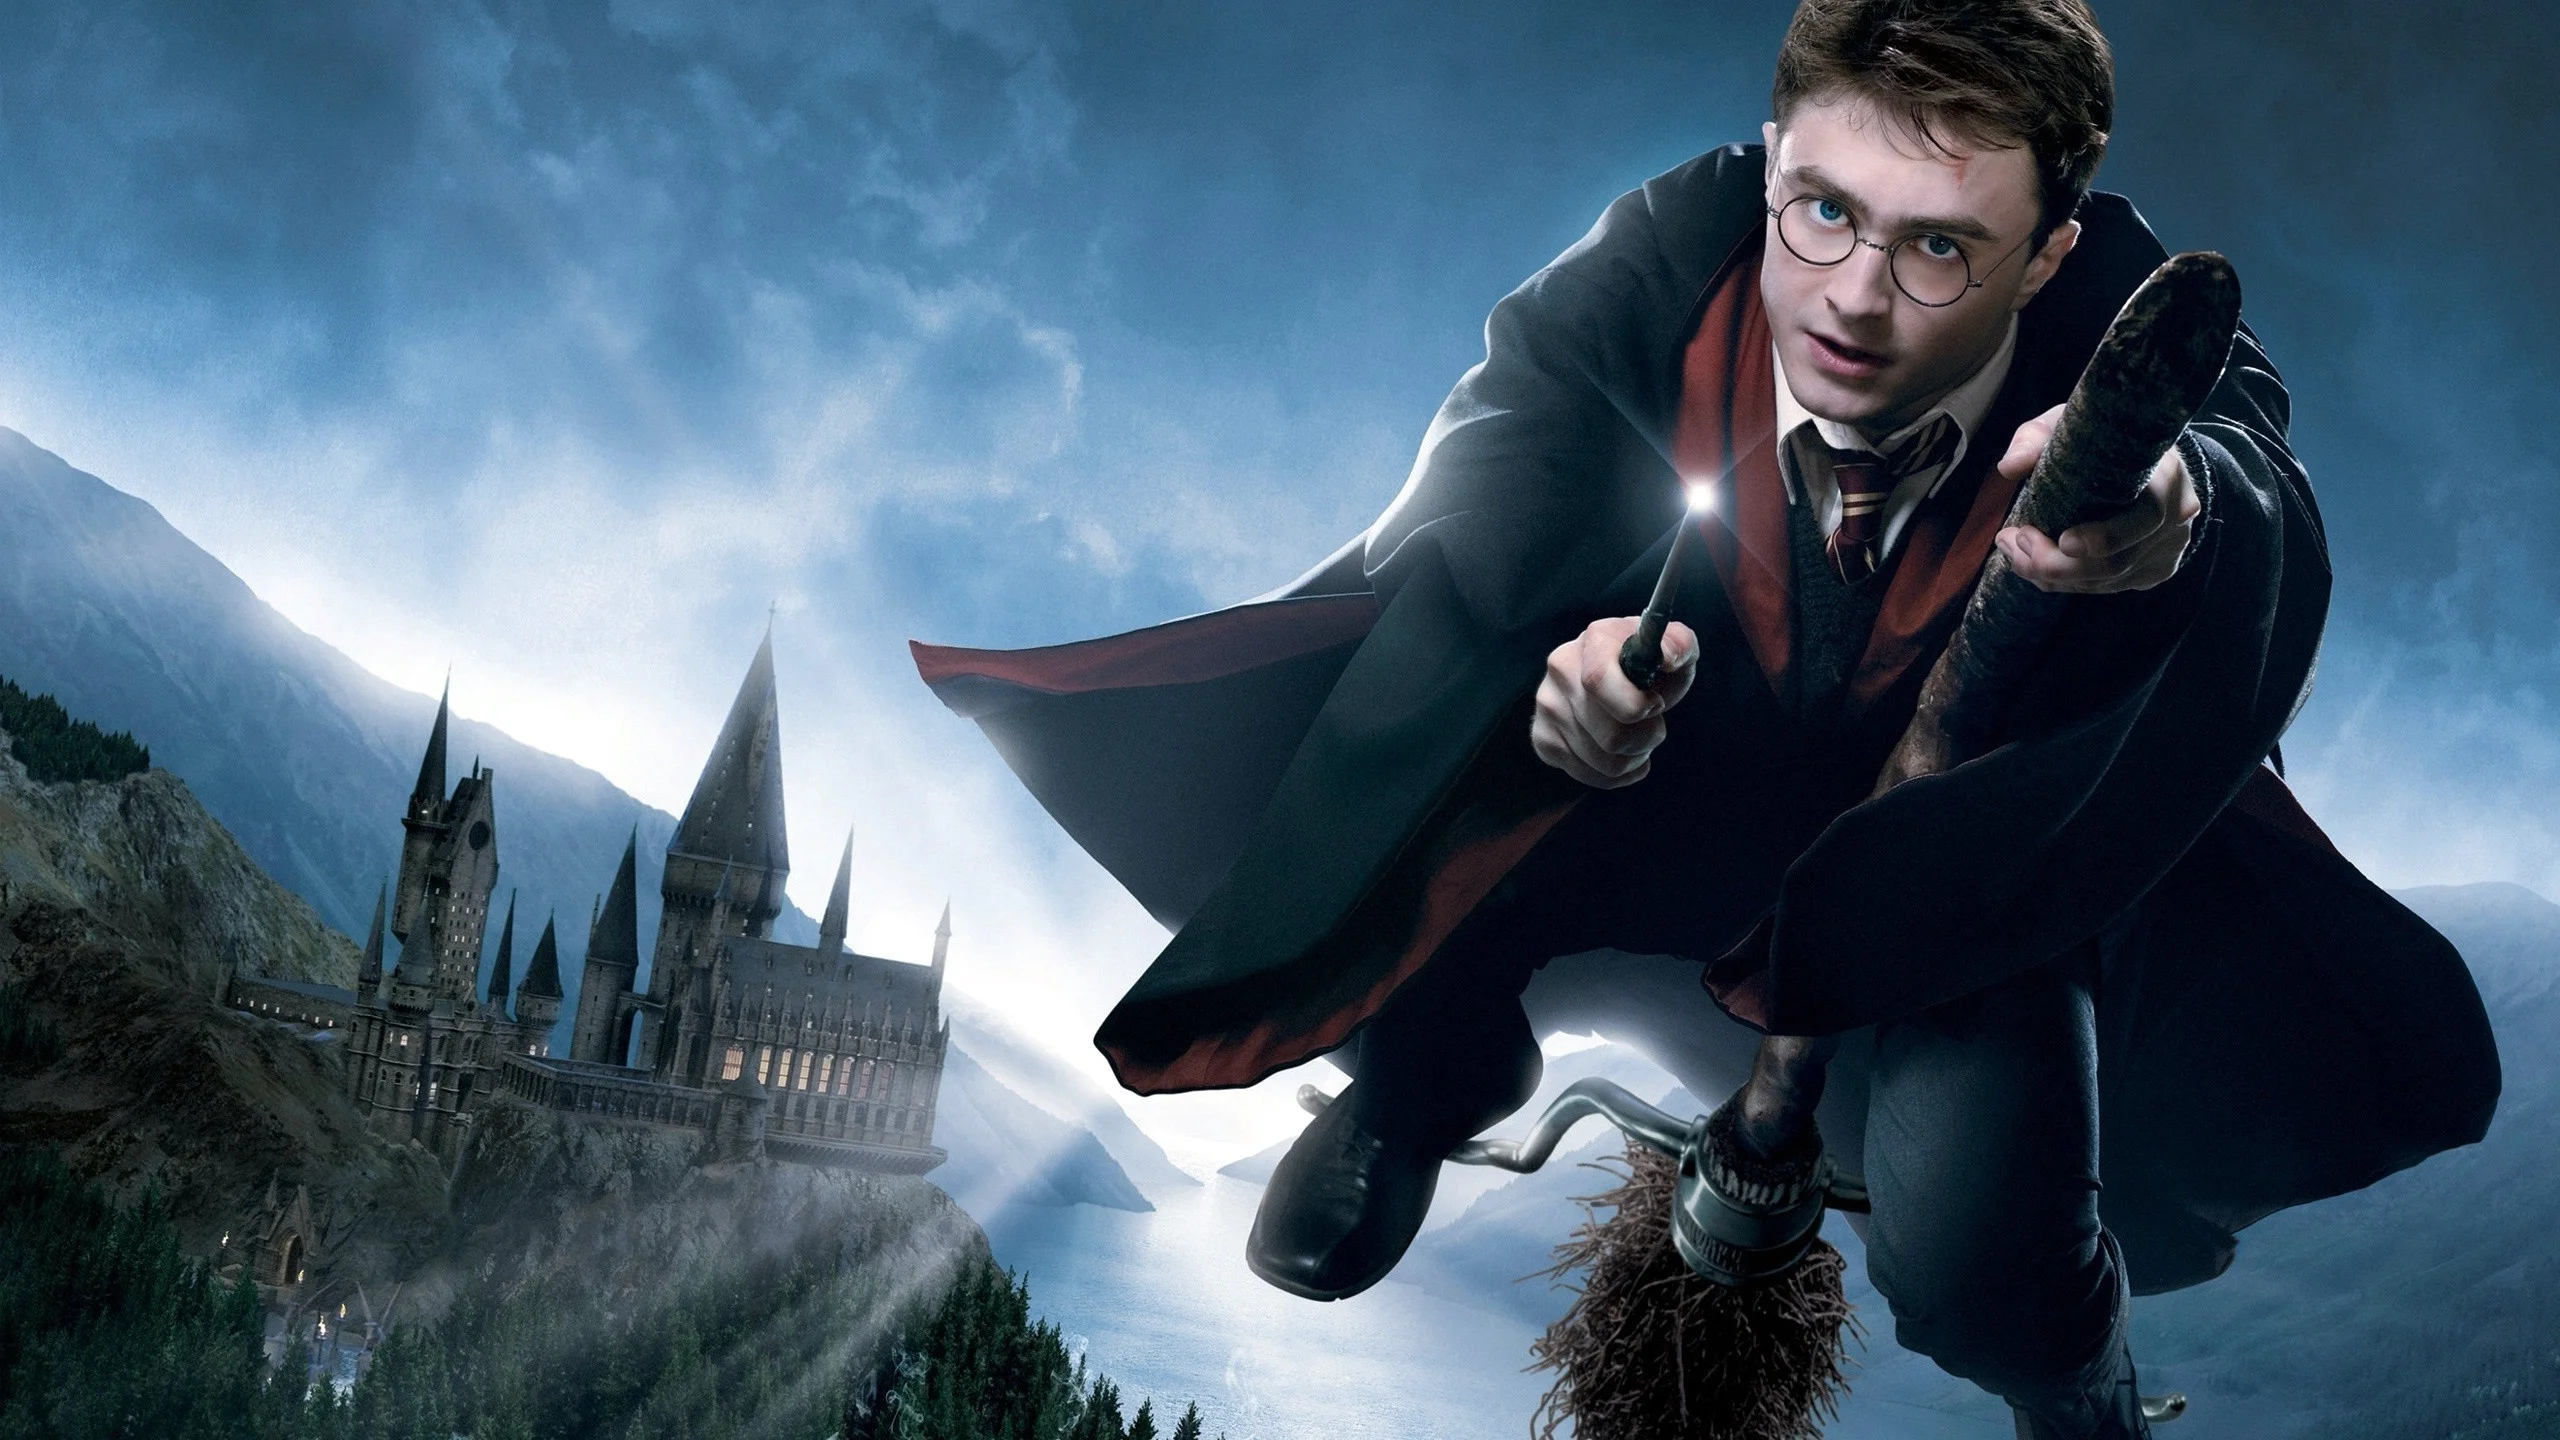 Harry Potter - một thế giới đầy phép thuật và tràn đầy tính nhân văn. Từ kinh điển \